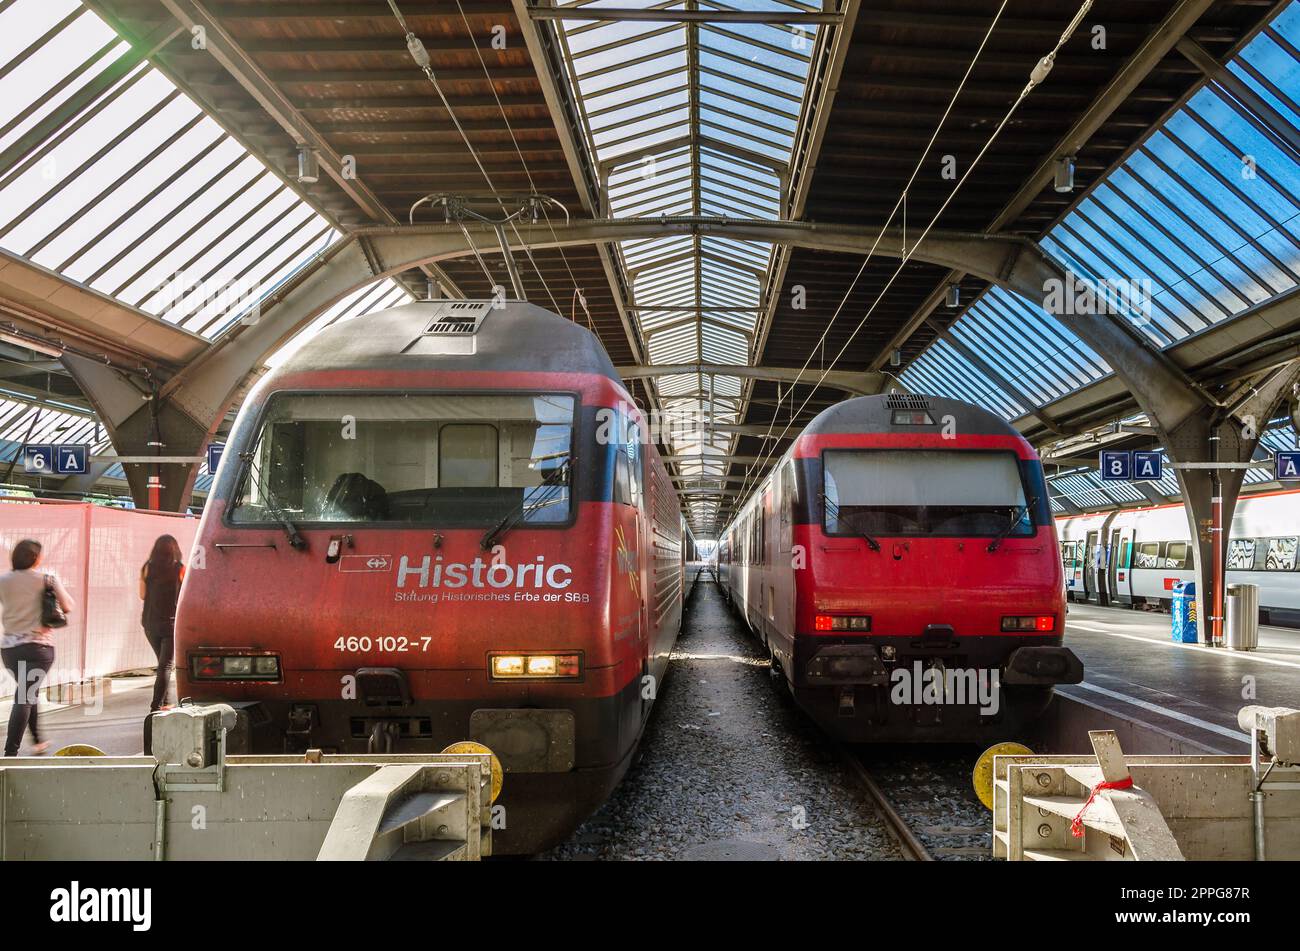 ZURICH, SUISSE - 3 SEPTEMBRE 2013 : trains à la gare de Zurich, Suisse Banque D'Images